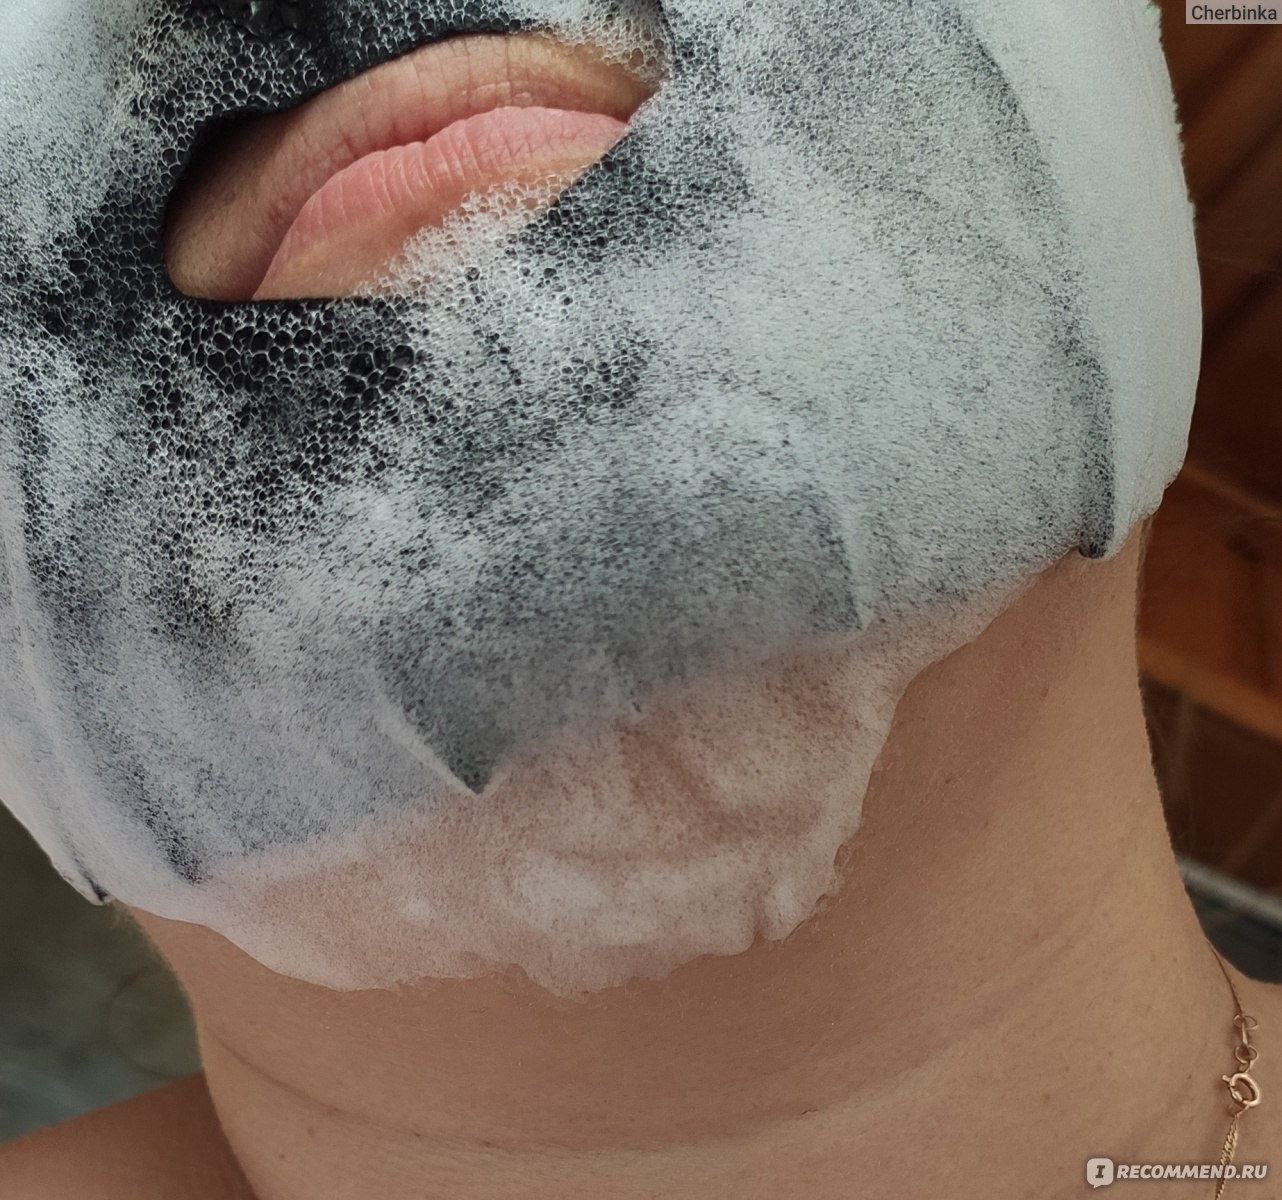 Пузырьковая тканевая маска для лица "Детокс и Сияние" Beauty Style отзыв